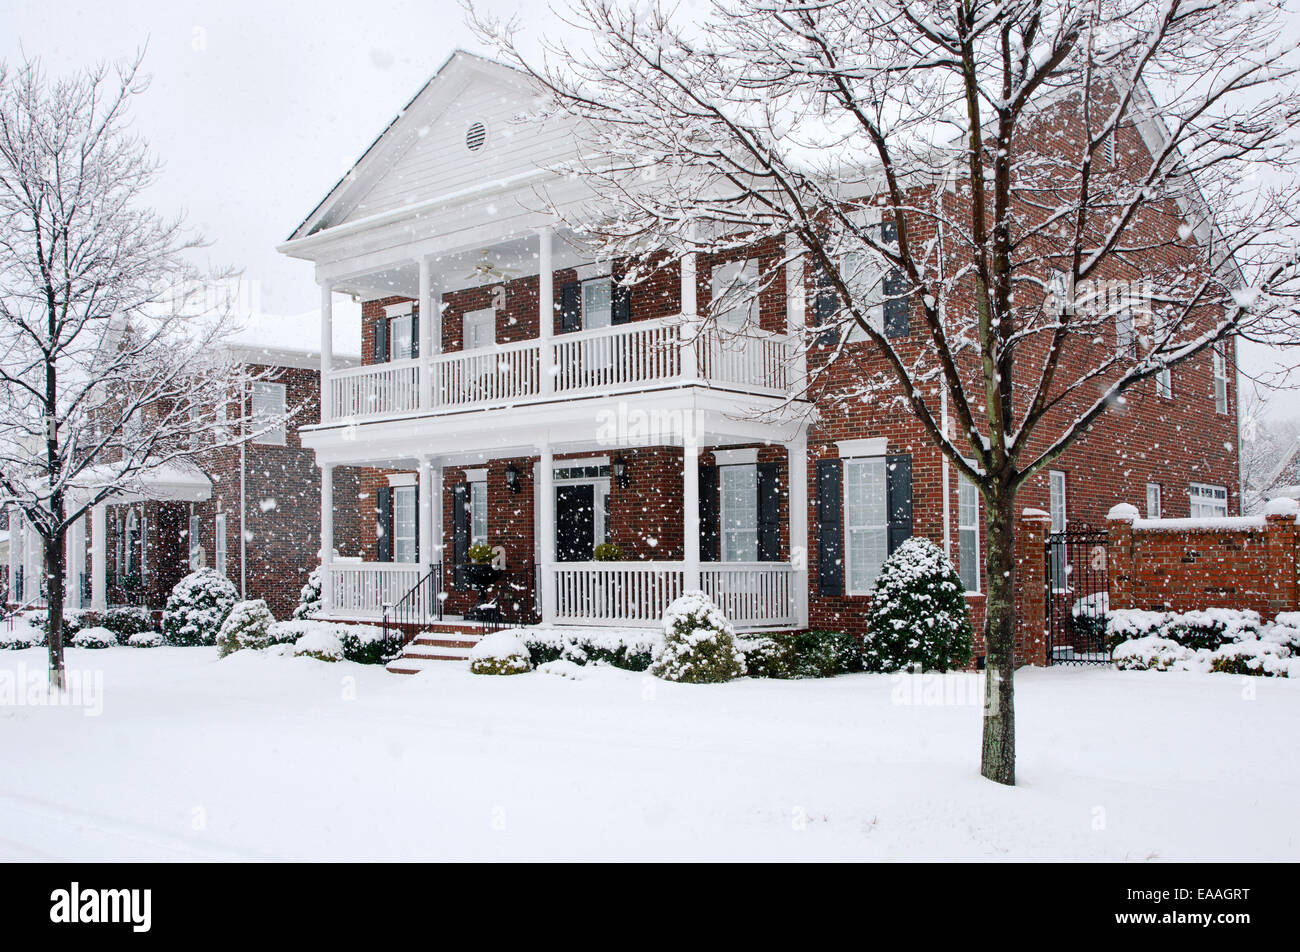 Tradicionales, casas de ladrillo son capturados durante una tormenta de nieve en esta hermosa escena de invierno. Foto de stock